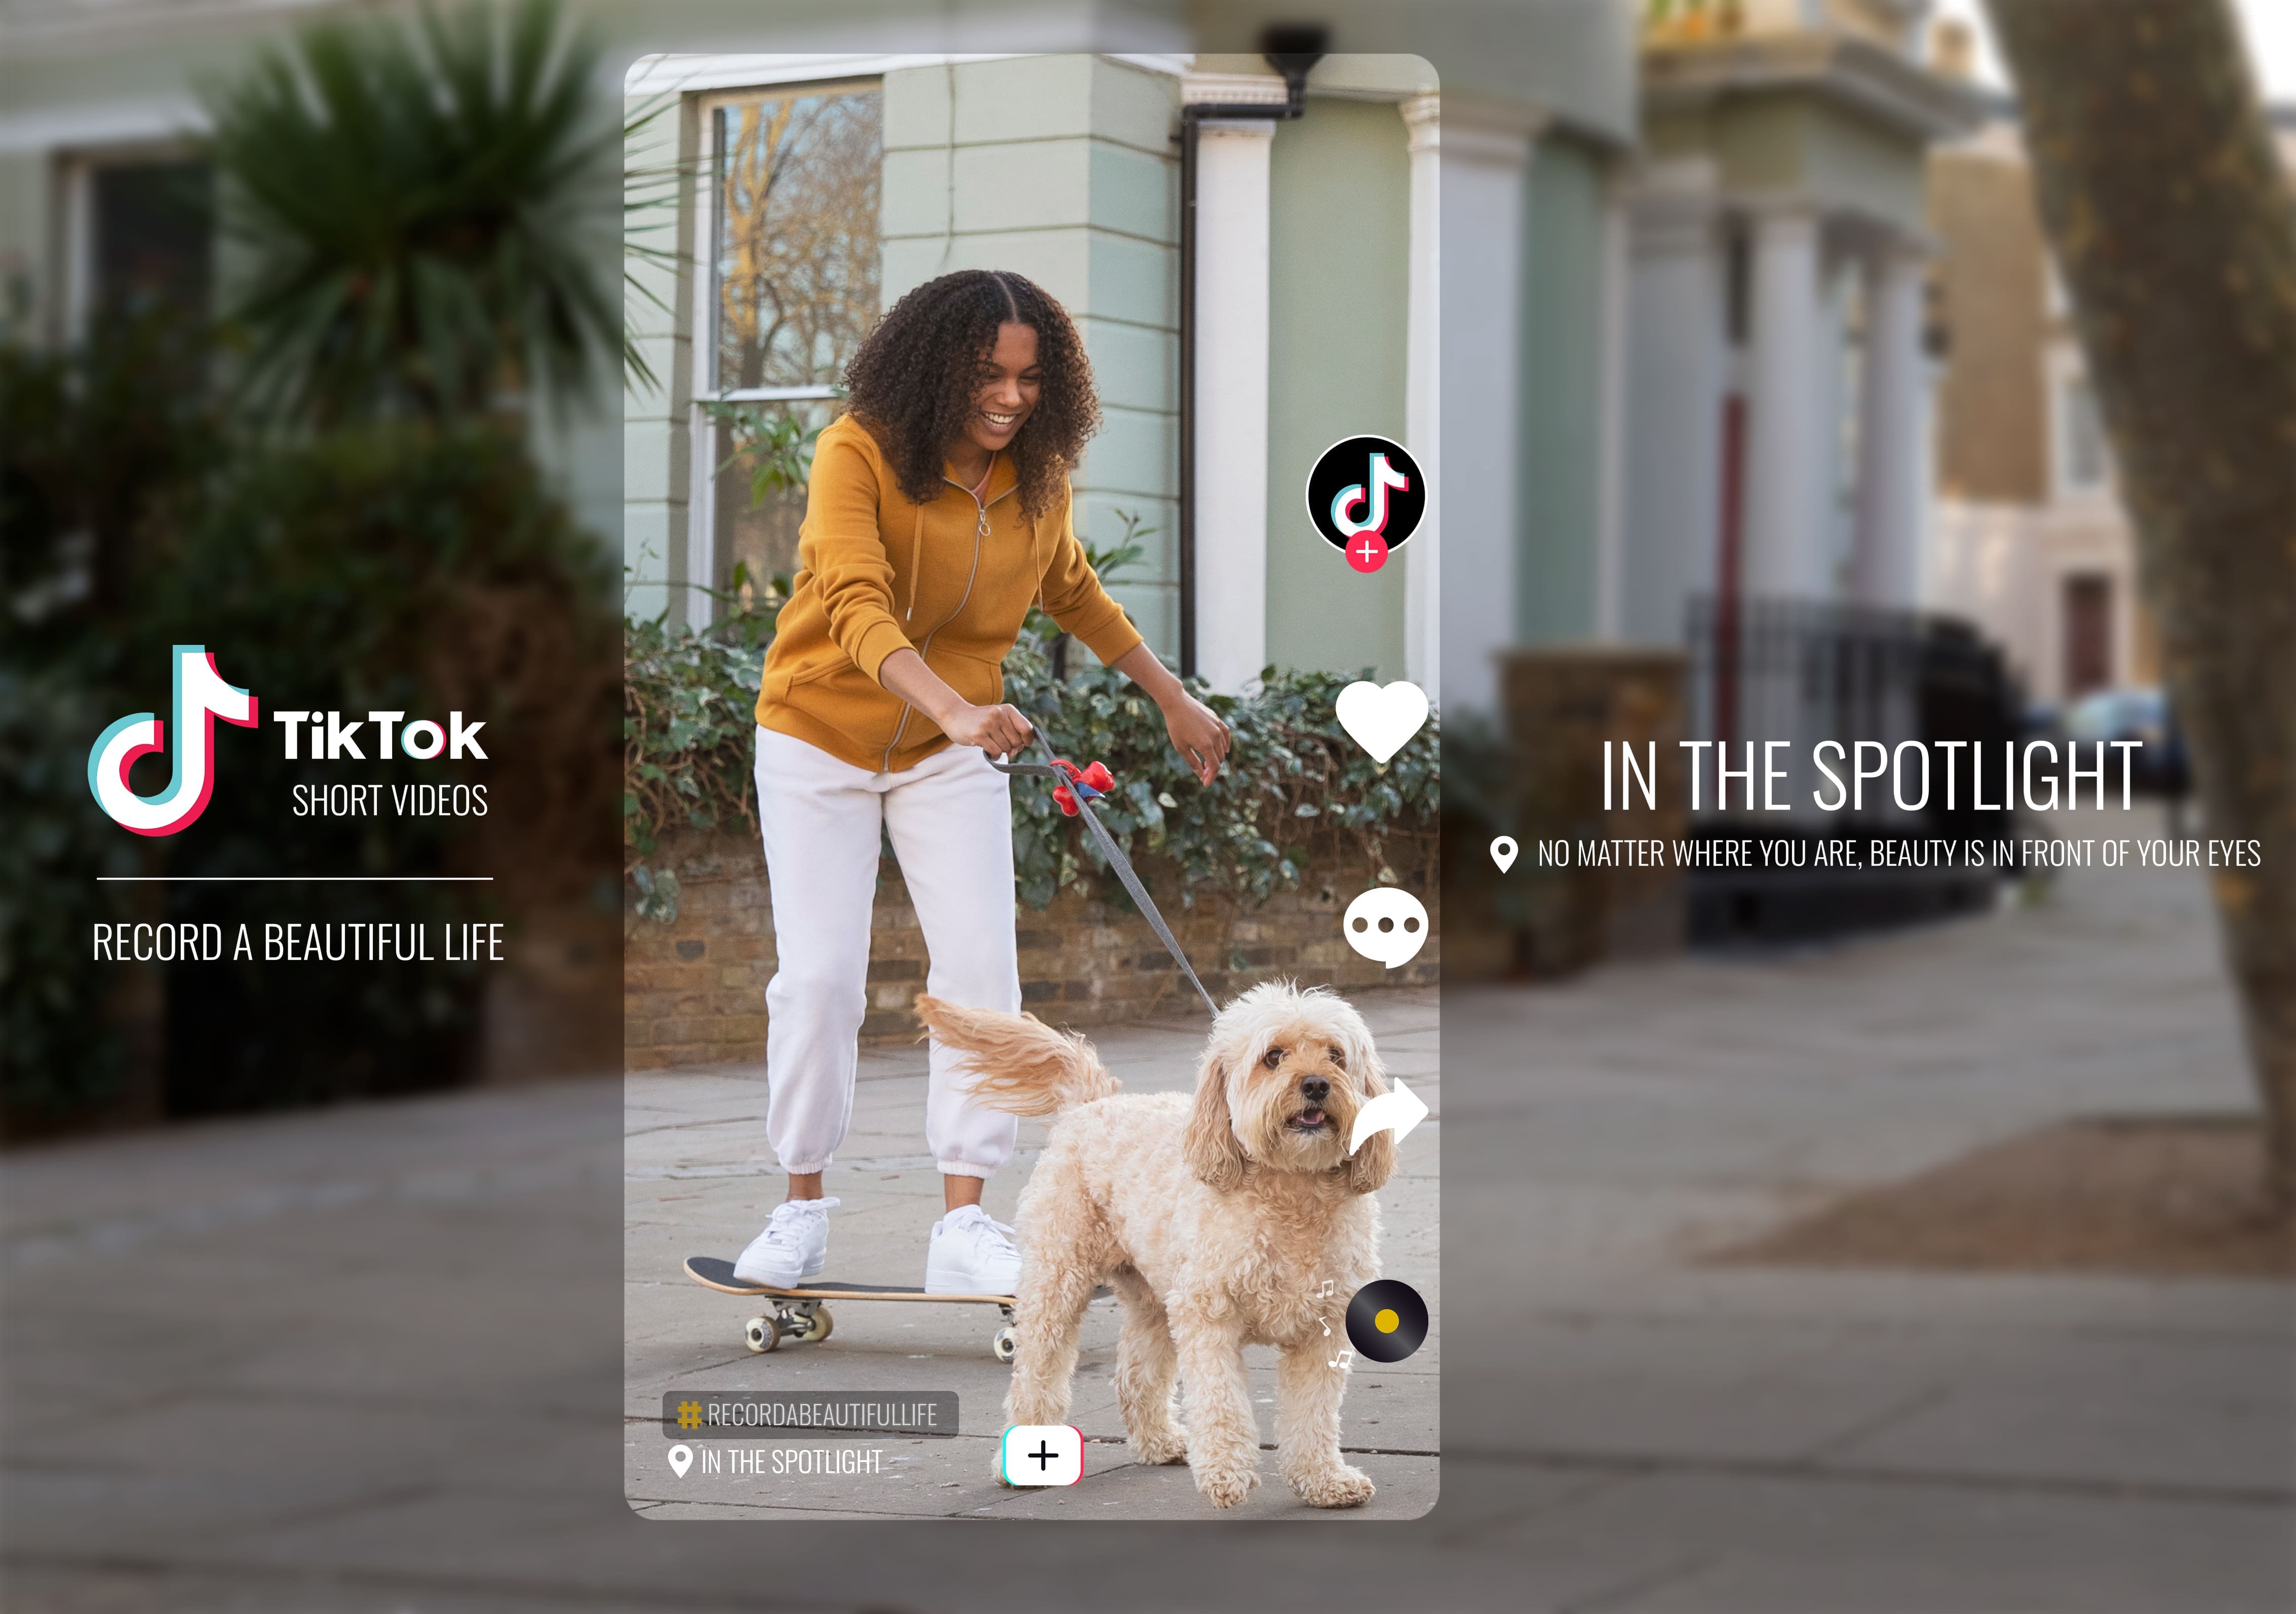 Visualizações no TikTok - Uma mulher, negra, cabelos cacheados, na frente de uma casa segurando um cachorro pela coleira. Ela está vestindo uma camisa na cor amarelo queimado e uma calça branca. Ao redor, tem os vídeos de curtir, comentar, comparitlhar e visualizações do TikTOK. Assim como a logo da plataforma na lateral. 